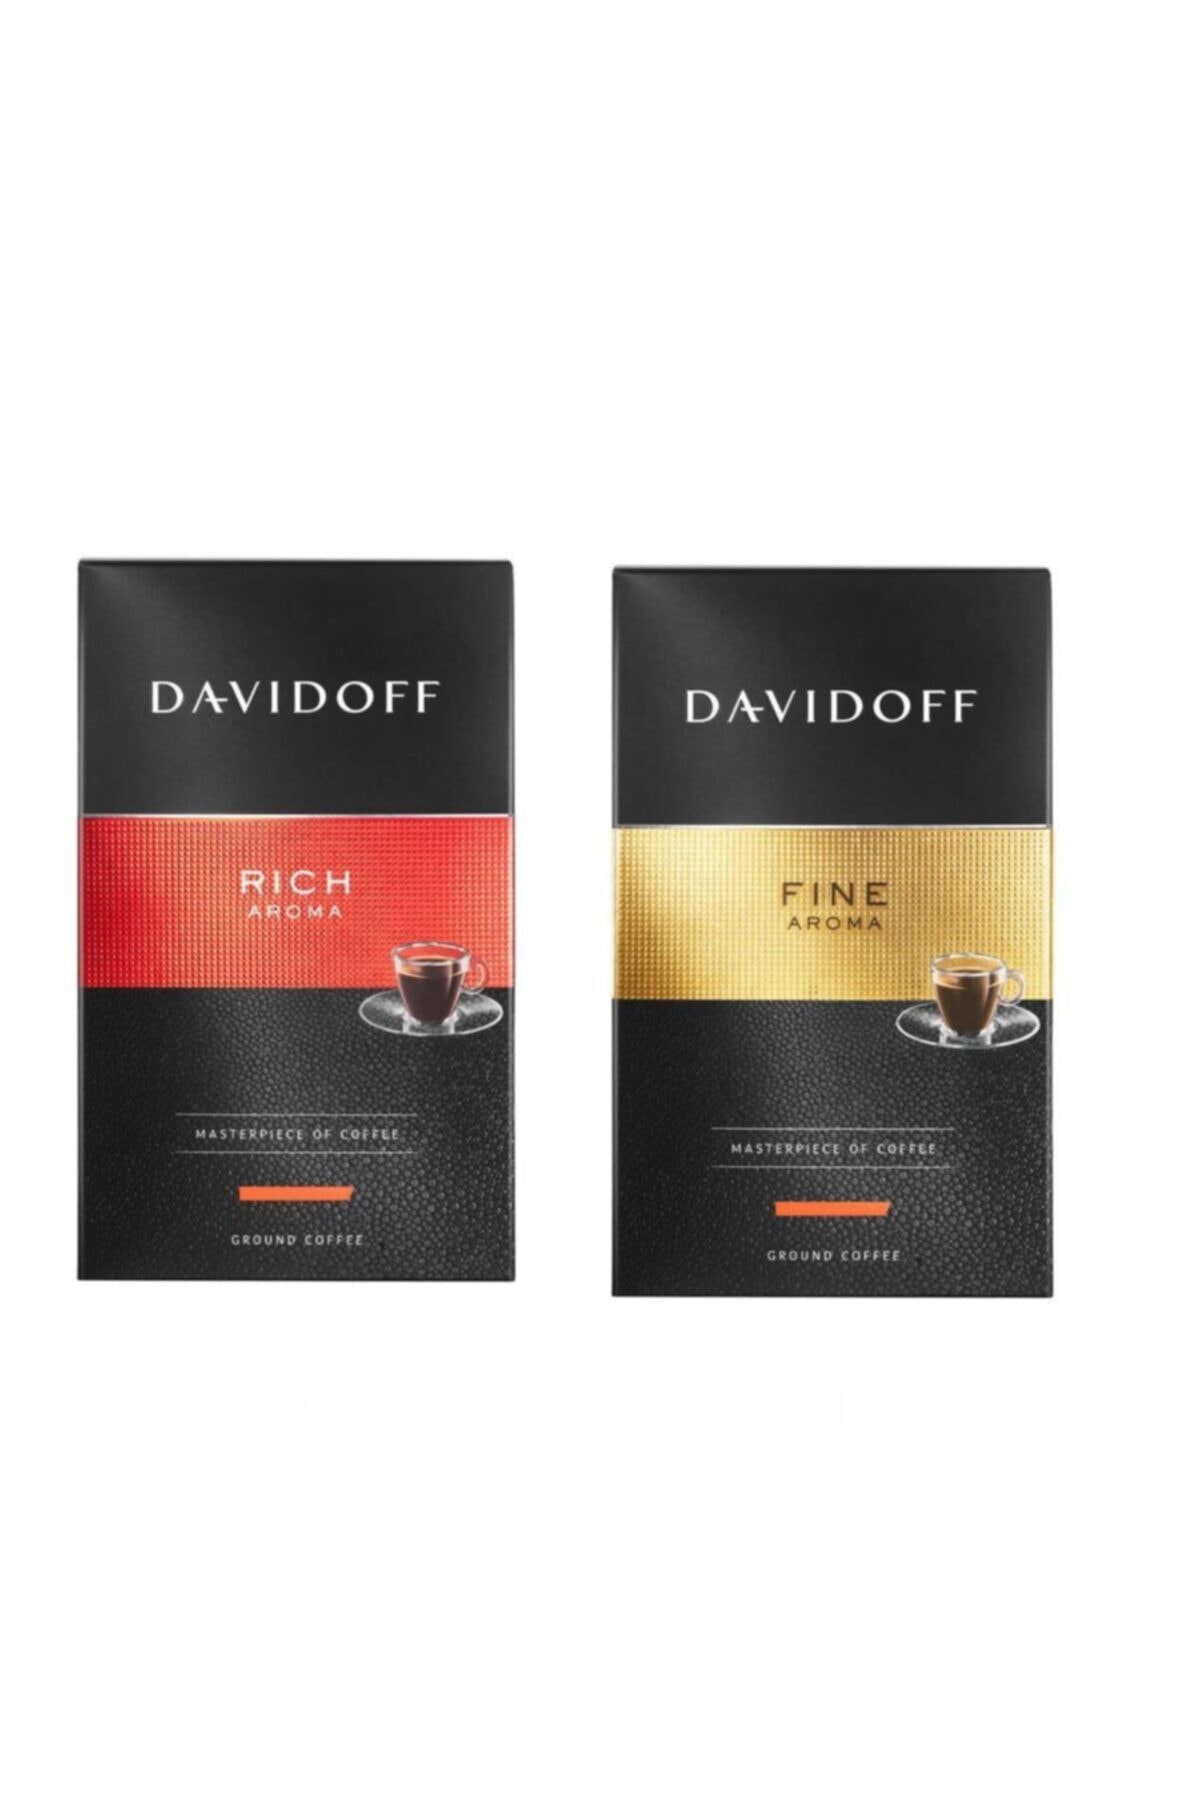 Davidoff Fine 250 Gr. - Rich 250 Gr.